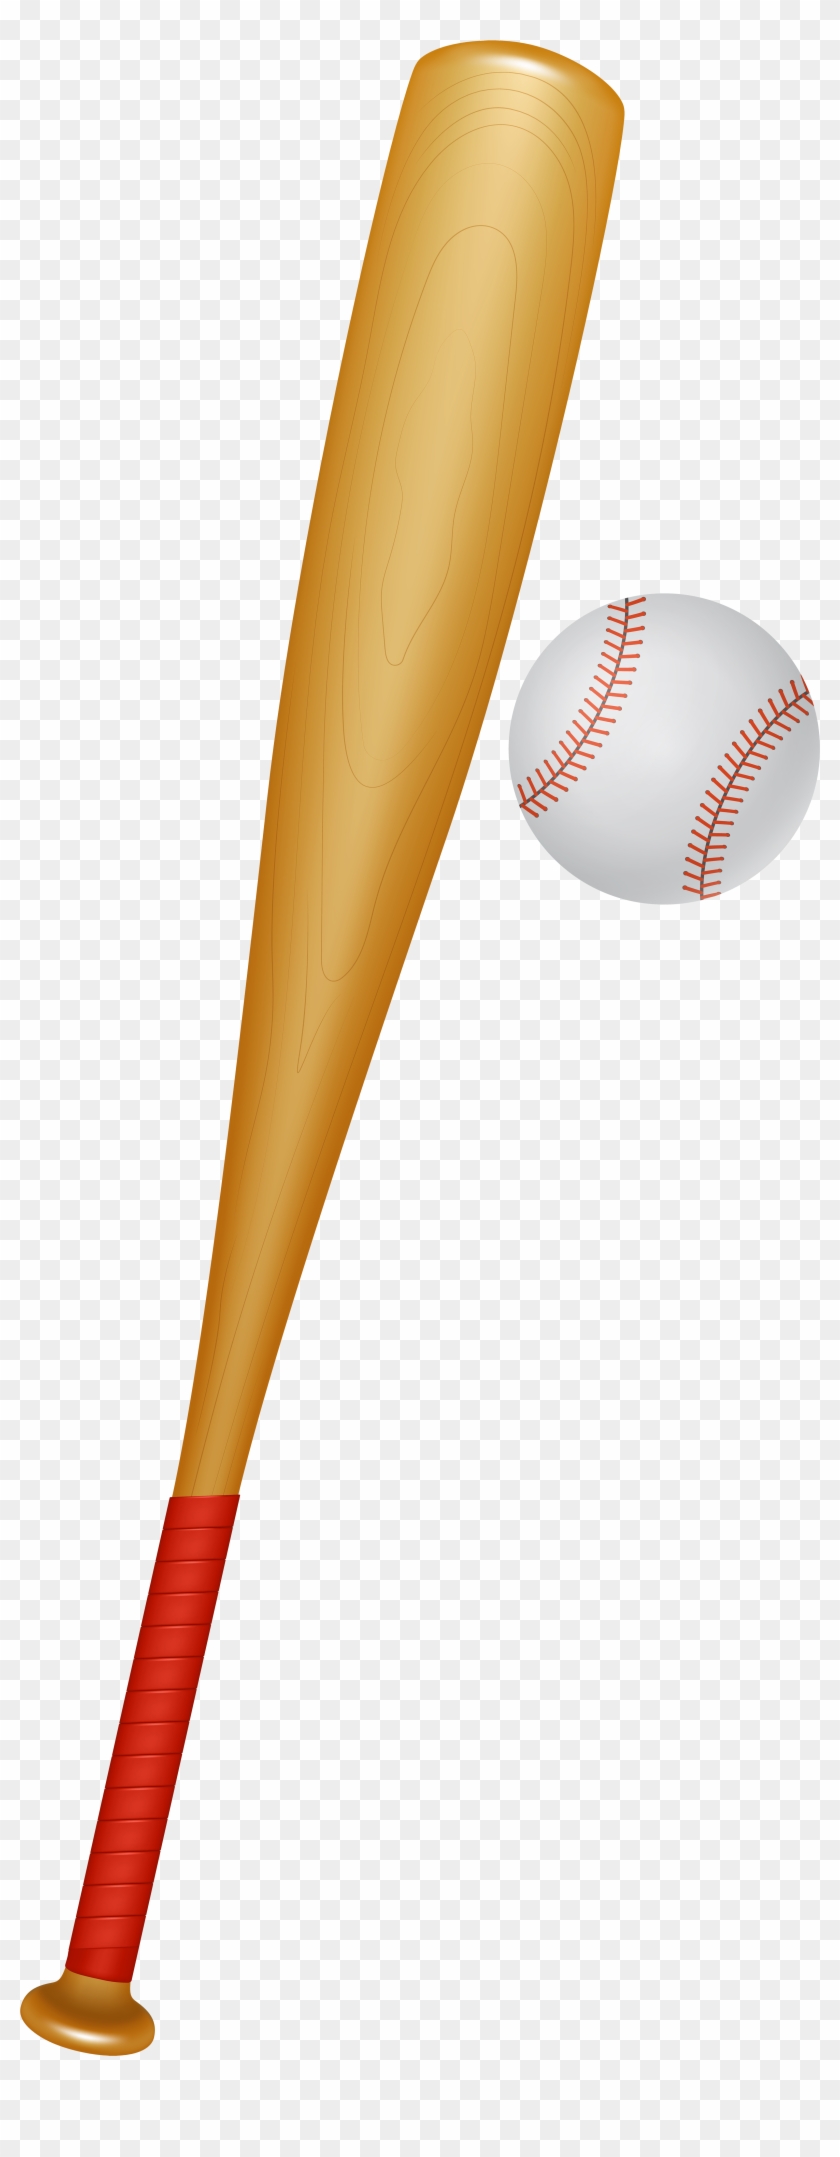 Baseball Bat Png Clipart Image - Baseball And Bat Clipart Png Transparent Png